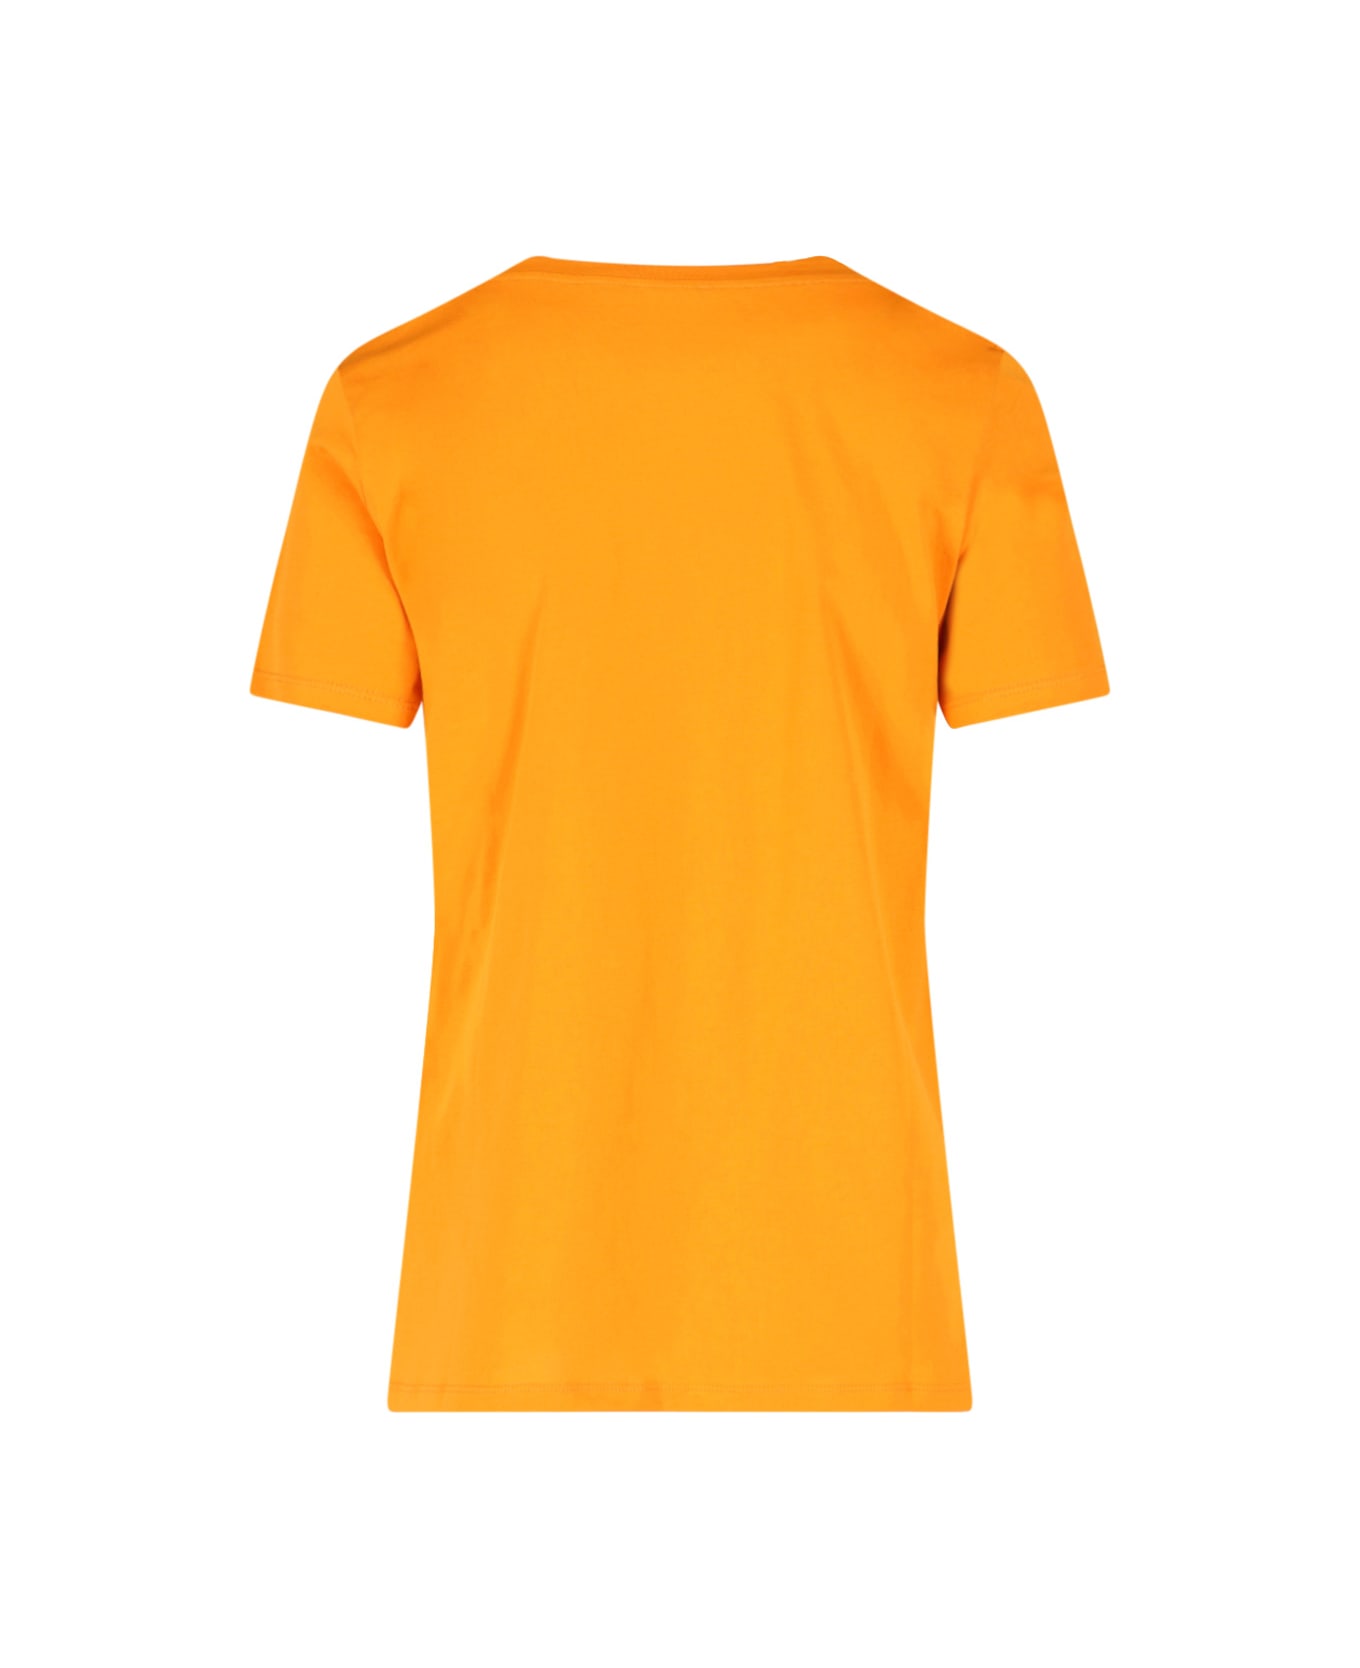 Balmain Logo Print Embellished T-shirt - Orange